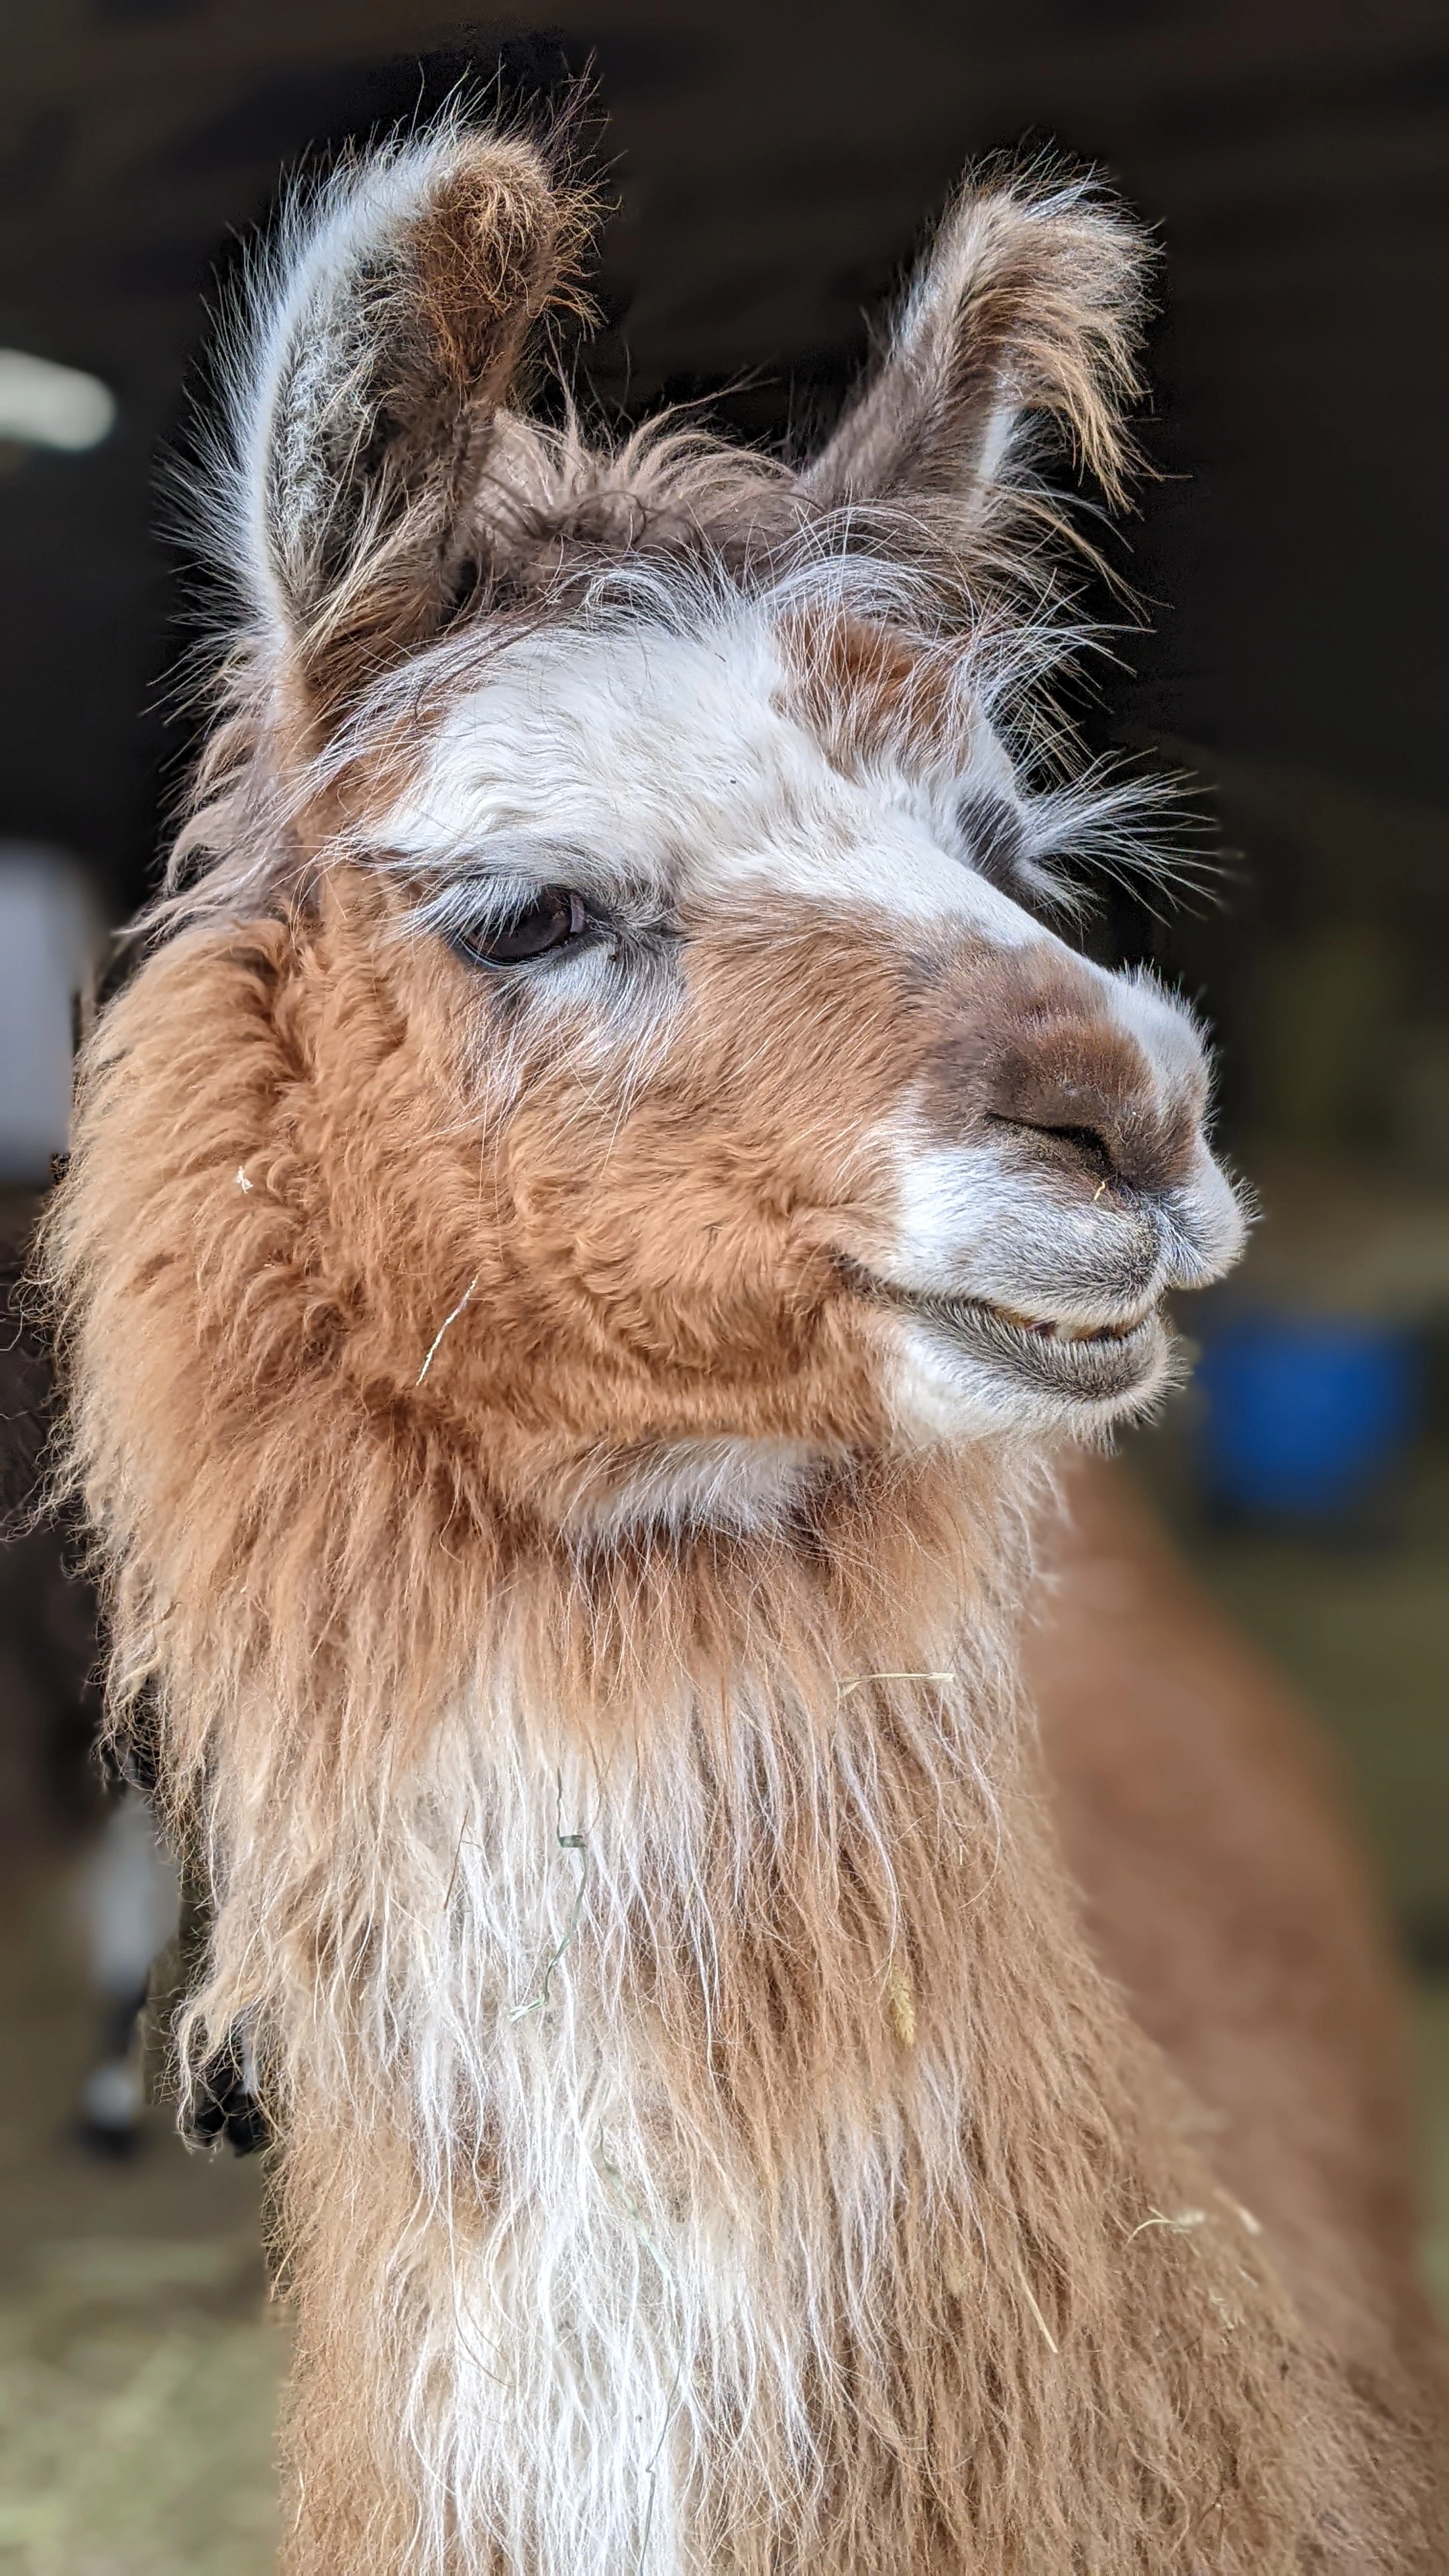 A portrait image of a llama named Elsa